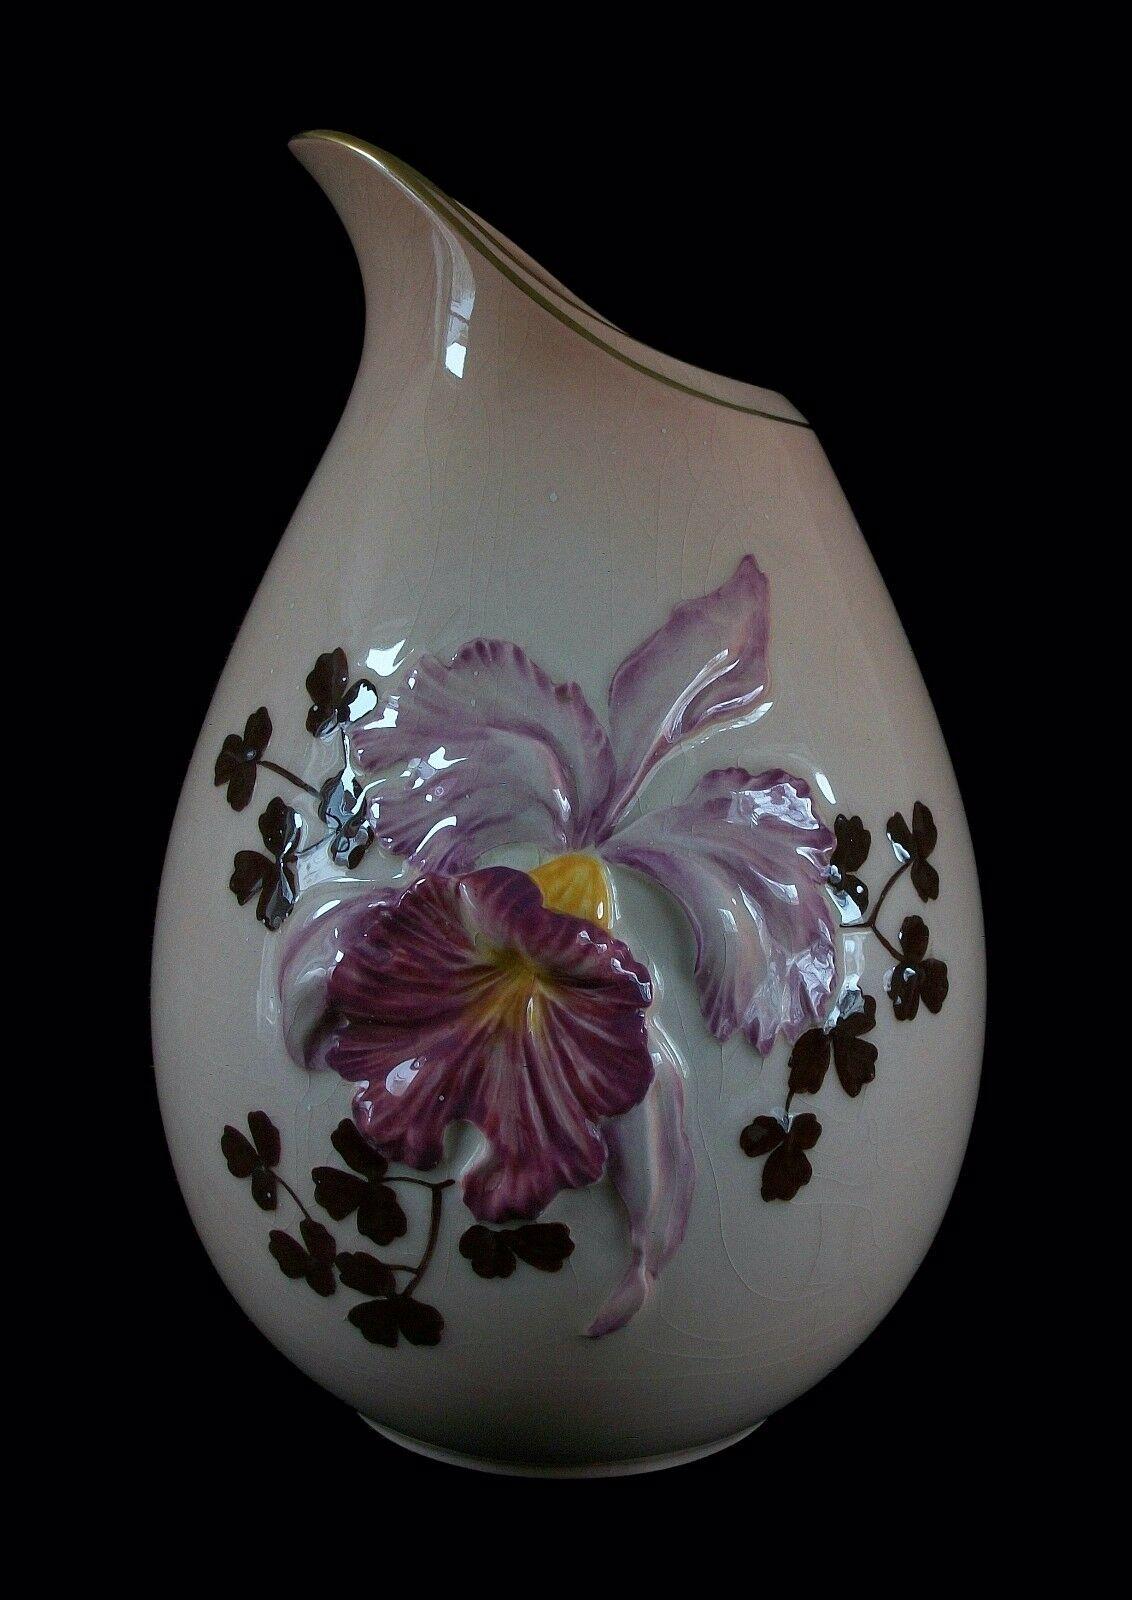 CARLTON WARE - Design australien - Motif d'orchidées en relief - Rare grand vase en céramique rose roux peint à la main avec des trèfles bruns - dorure sur le bord - signé sur la base - Royaume-Uni - milieu du XXe siècle. 

Excellent état vintage -